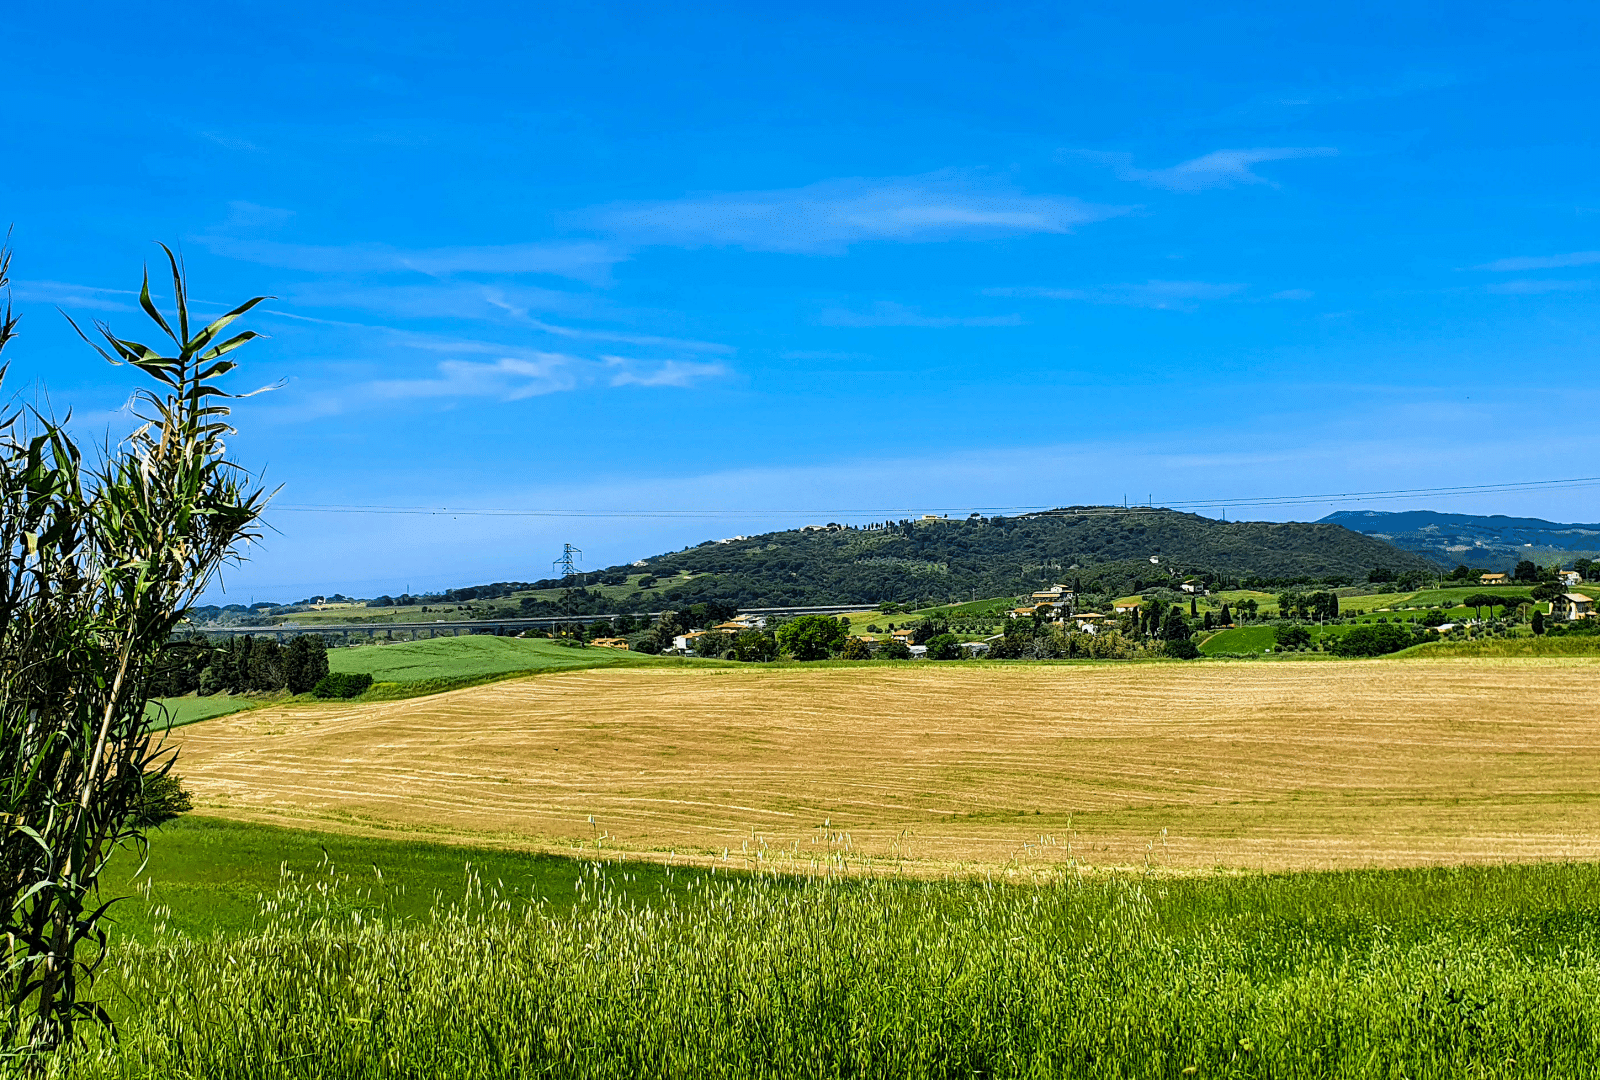 Crop fields in Santa Luce